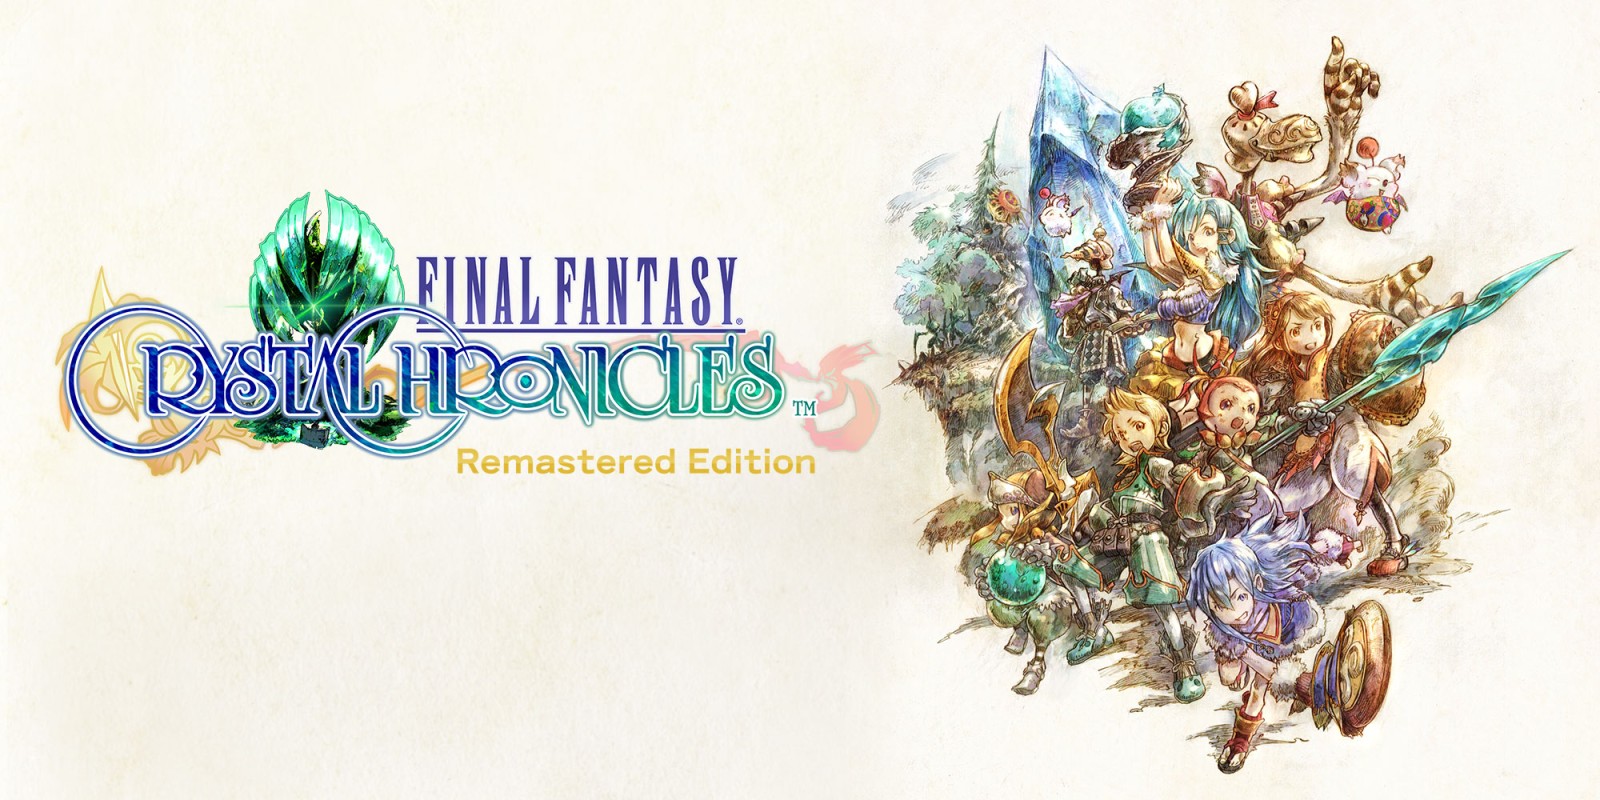 Xbox Game Pass começa setembro com Final Fantasy 13 e mais 7 jogos